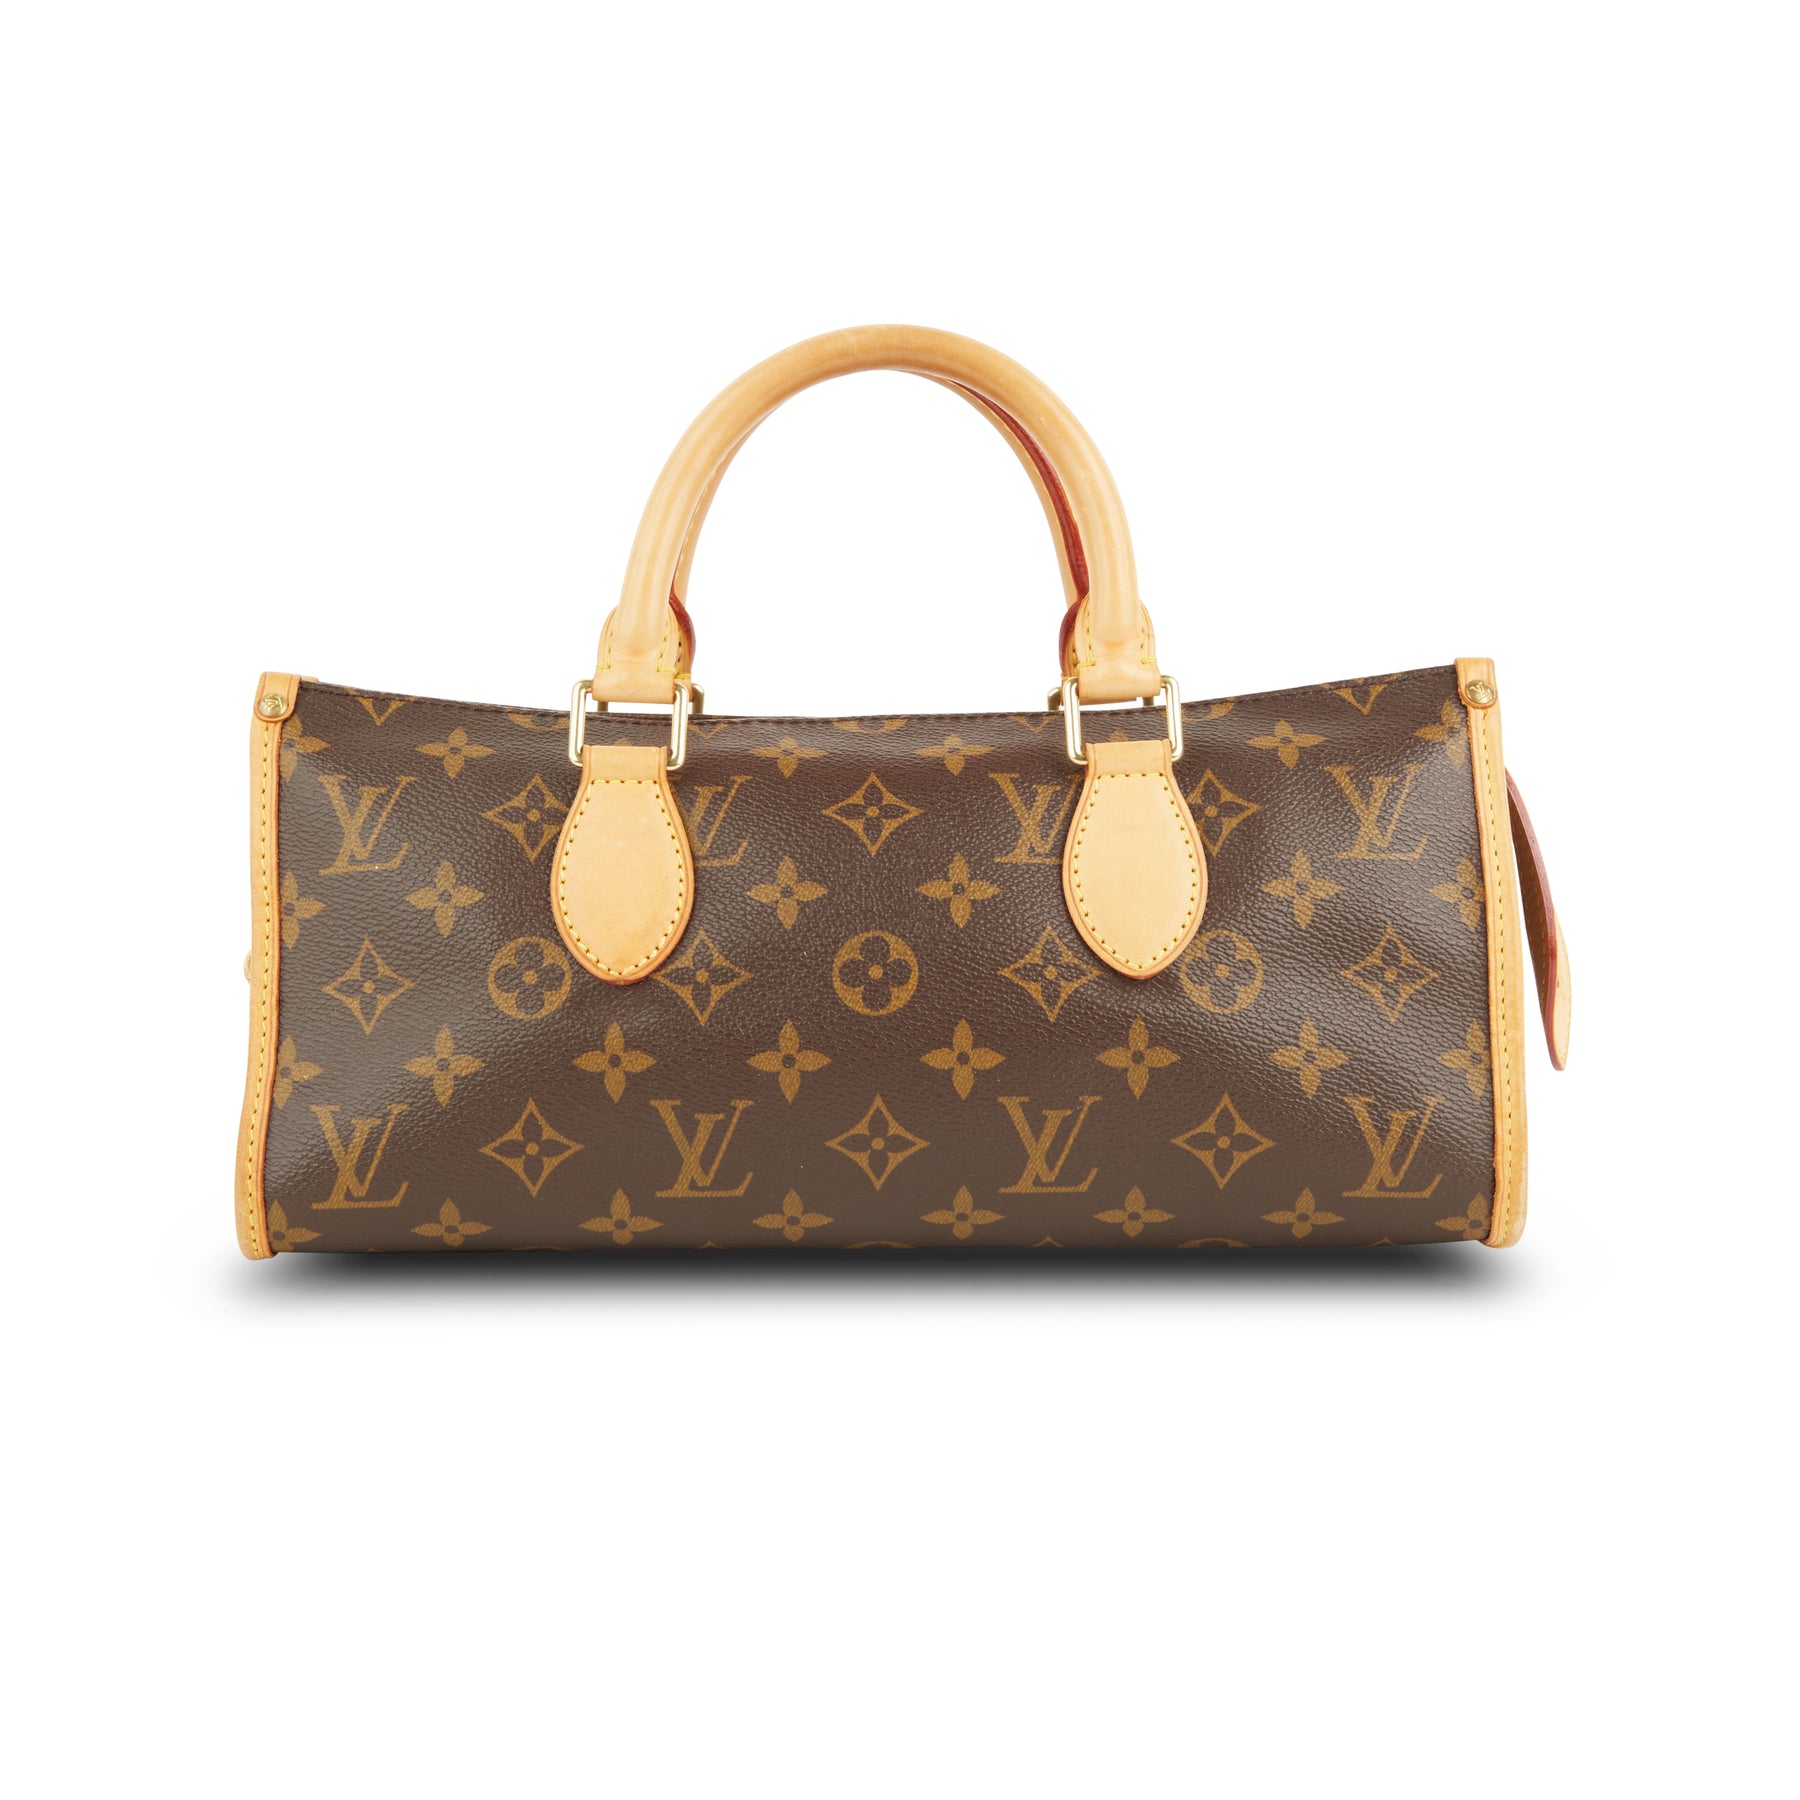 Authentic Louis Vuitton Popincourt Monogram Leather Canvas Handbag $1200